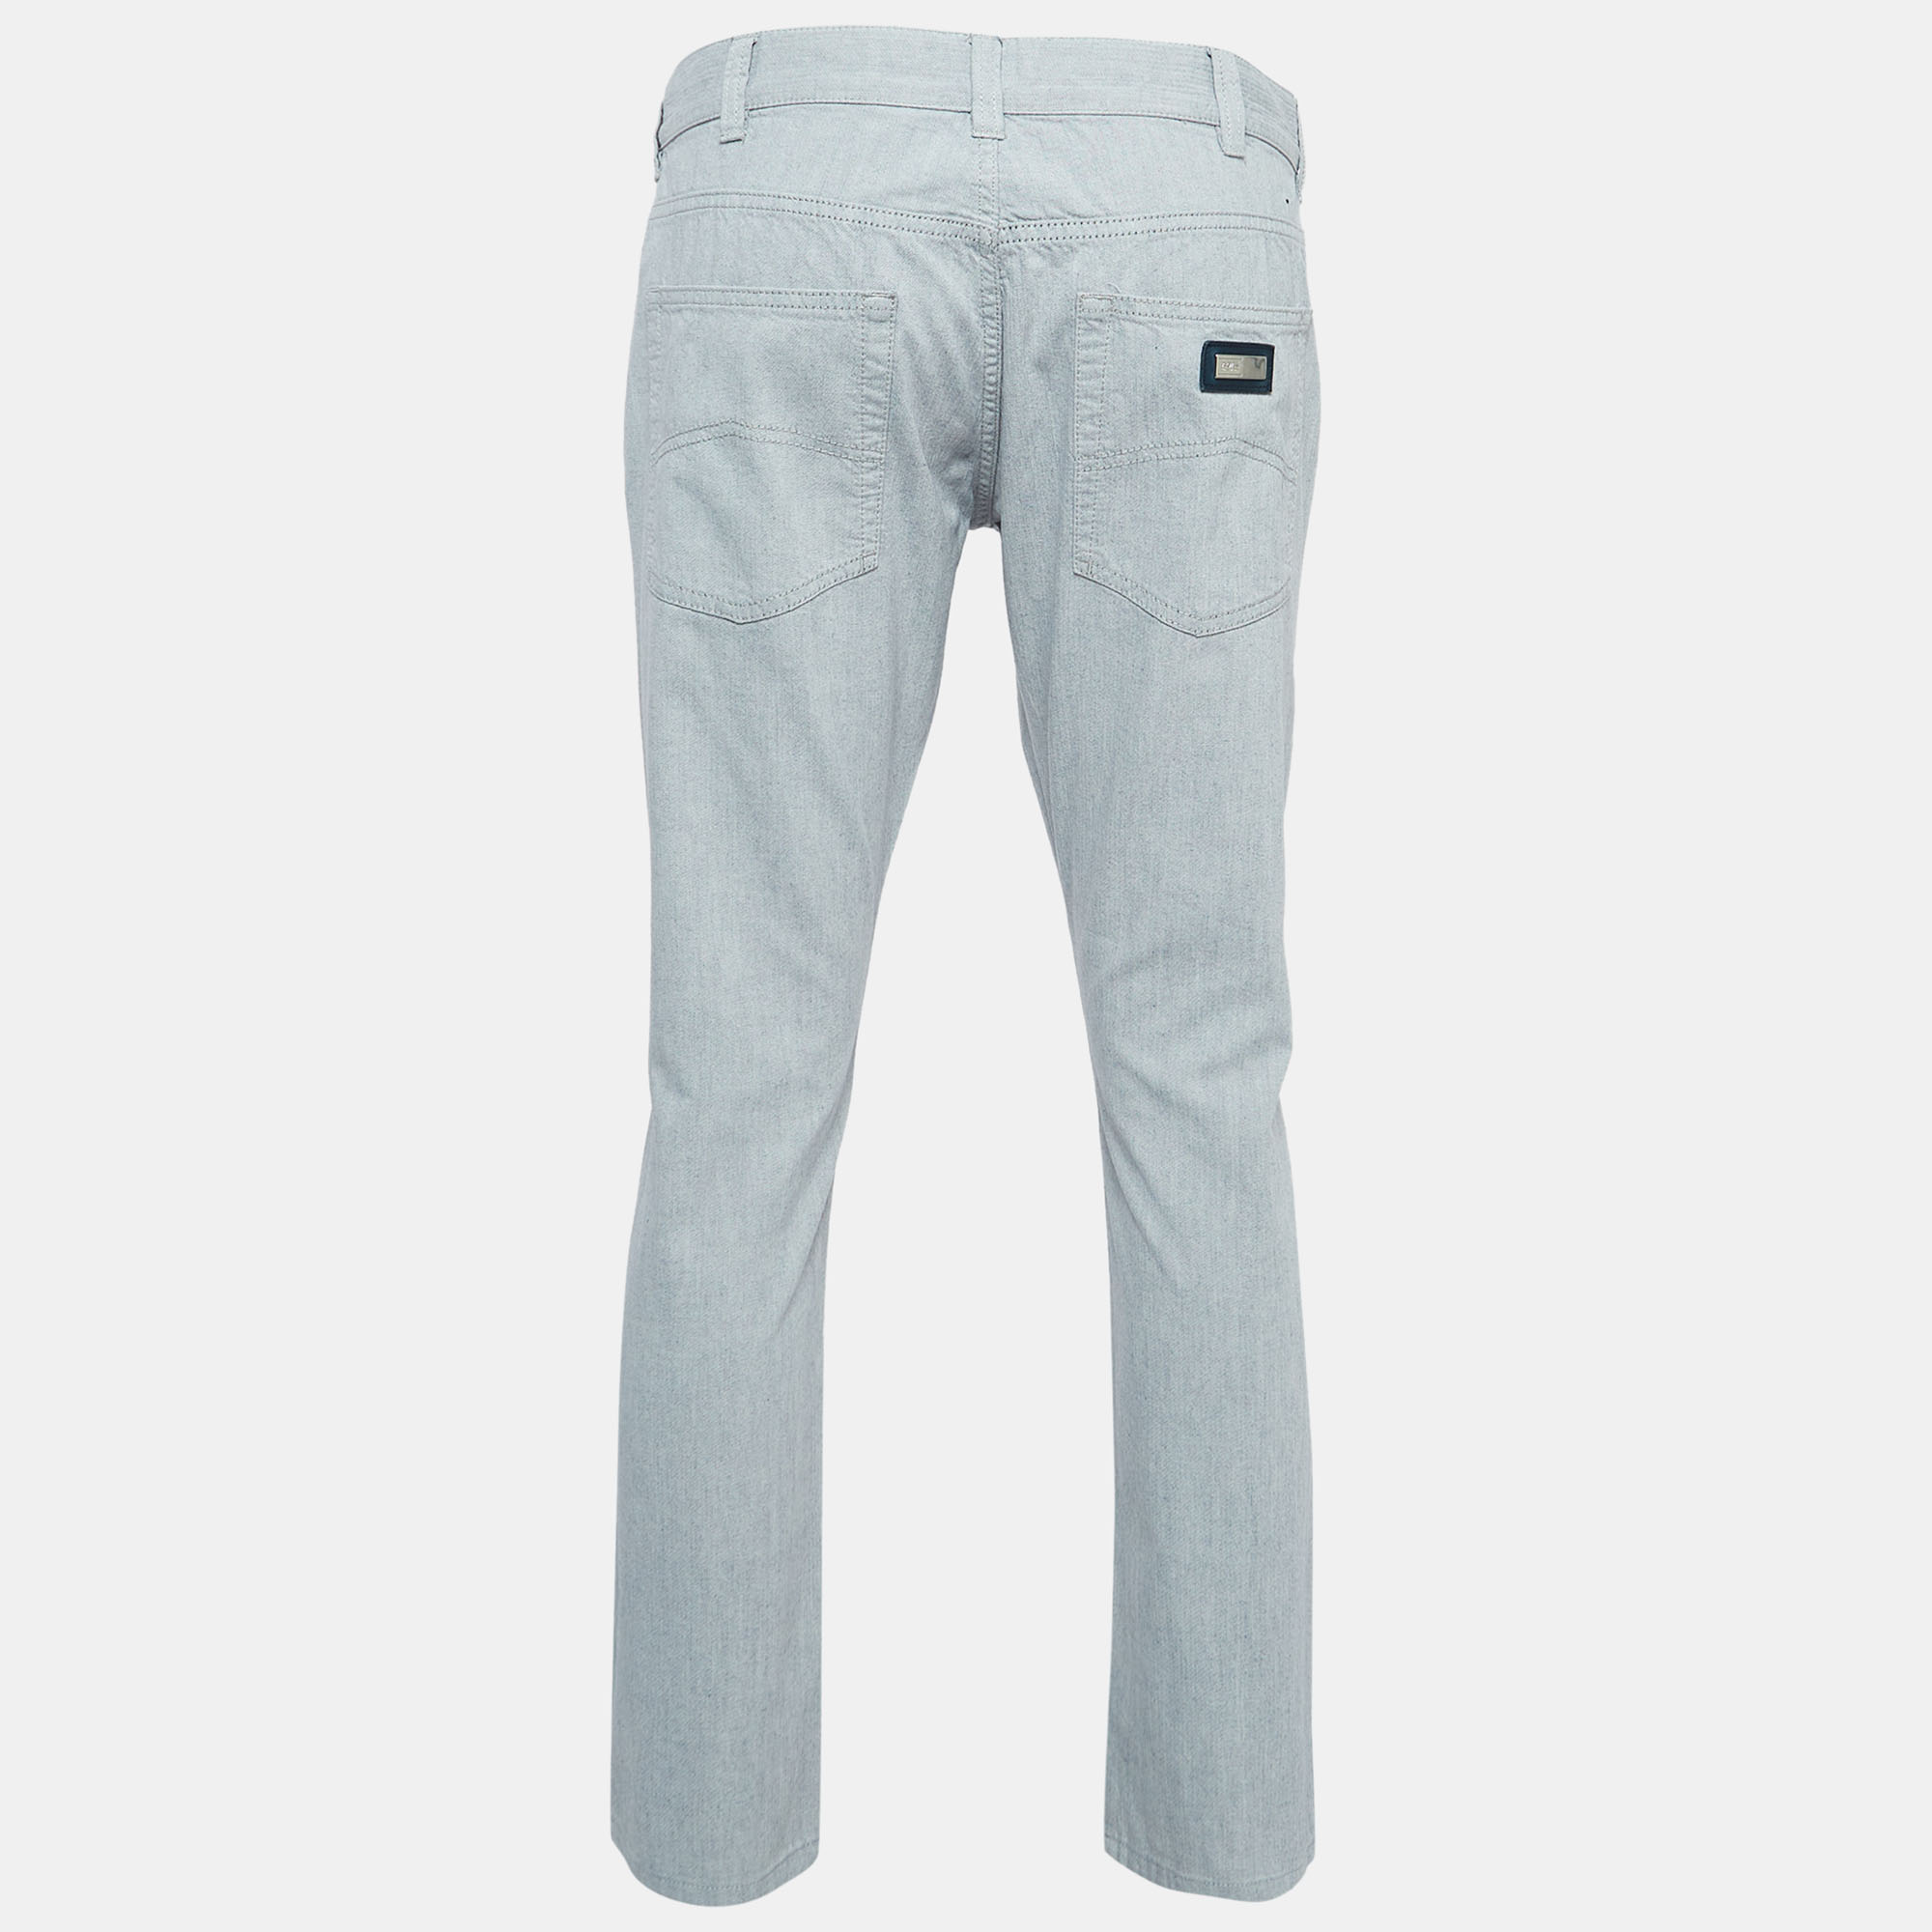 Pants Armani Collezioni Light Blue Denim Slim Fit Jeans L Waist 34''